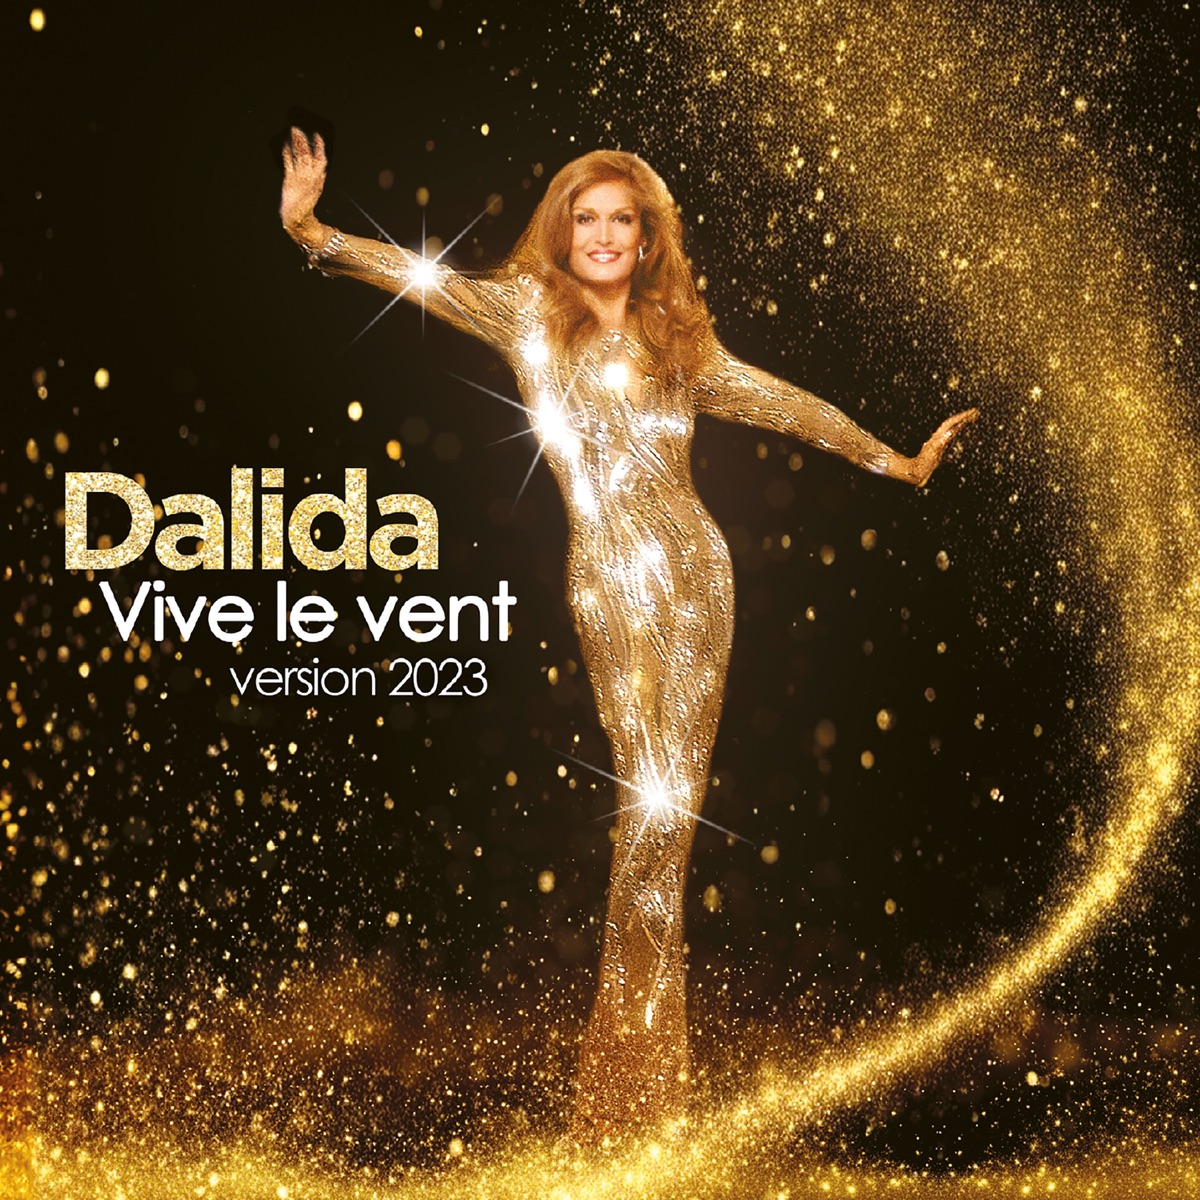 Vive le vent - Album by Dalida - Apple Music